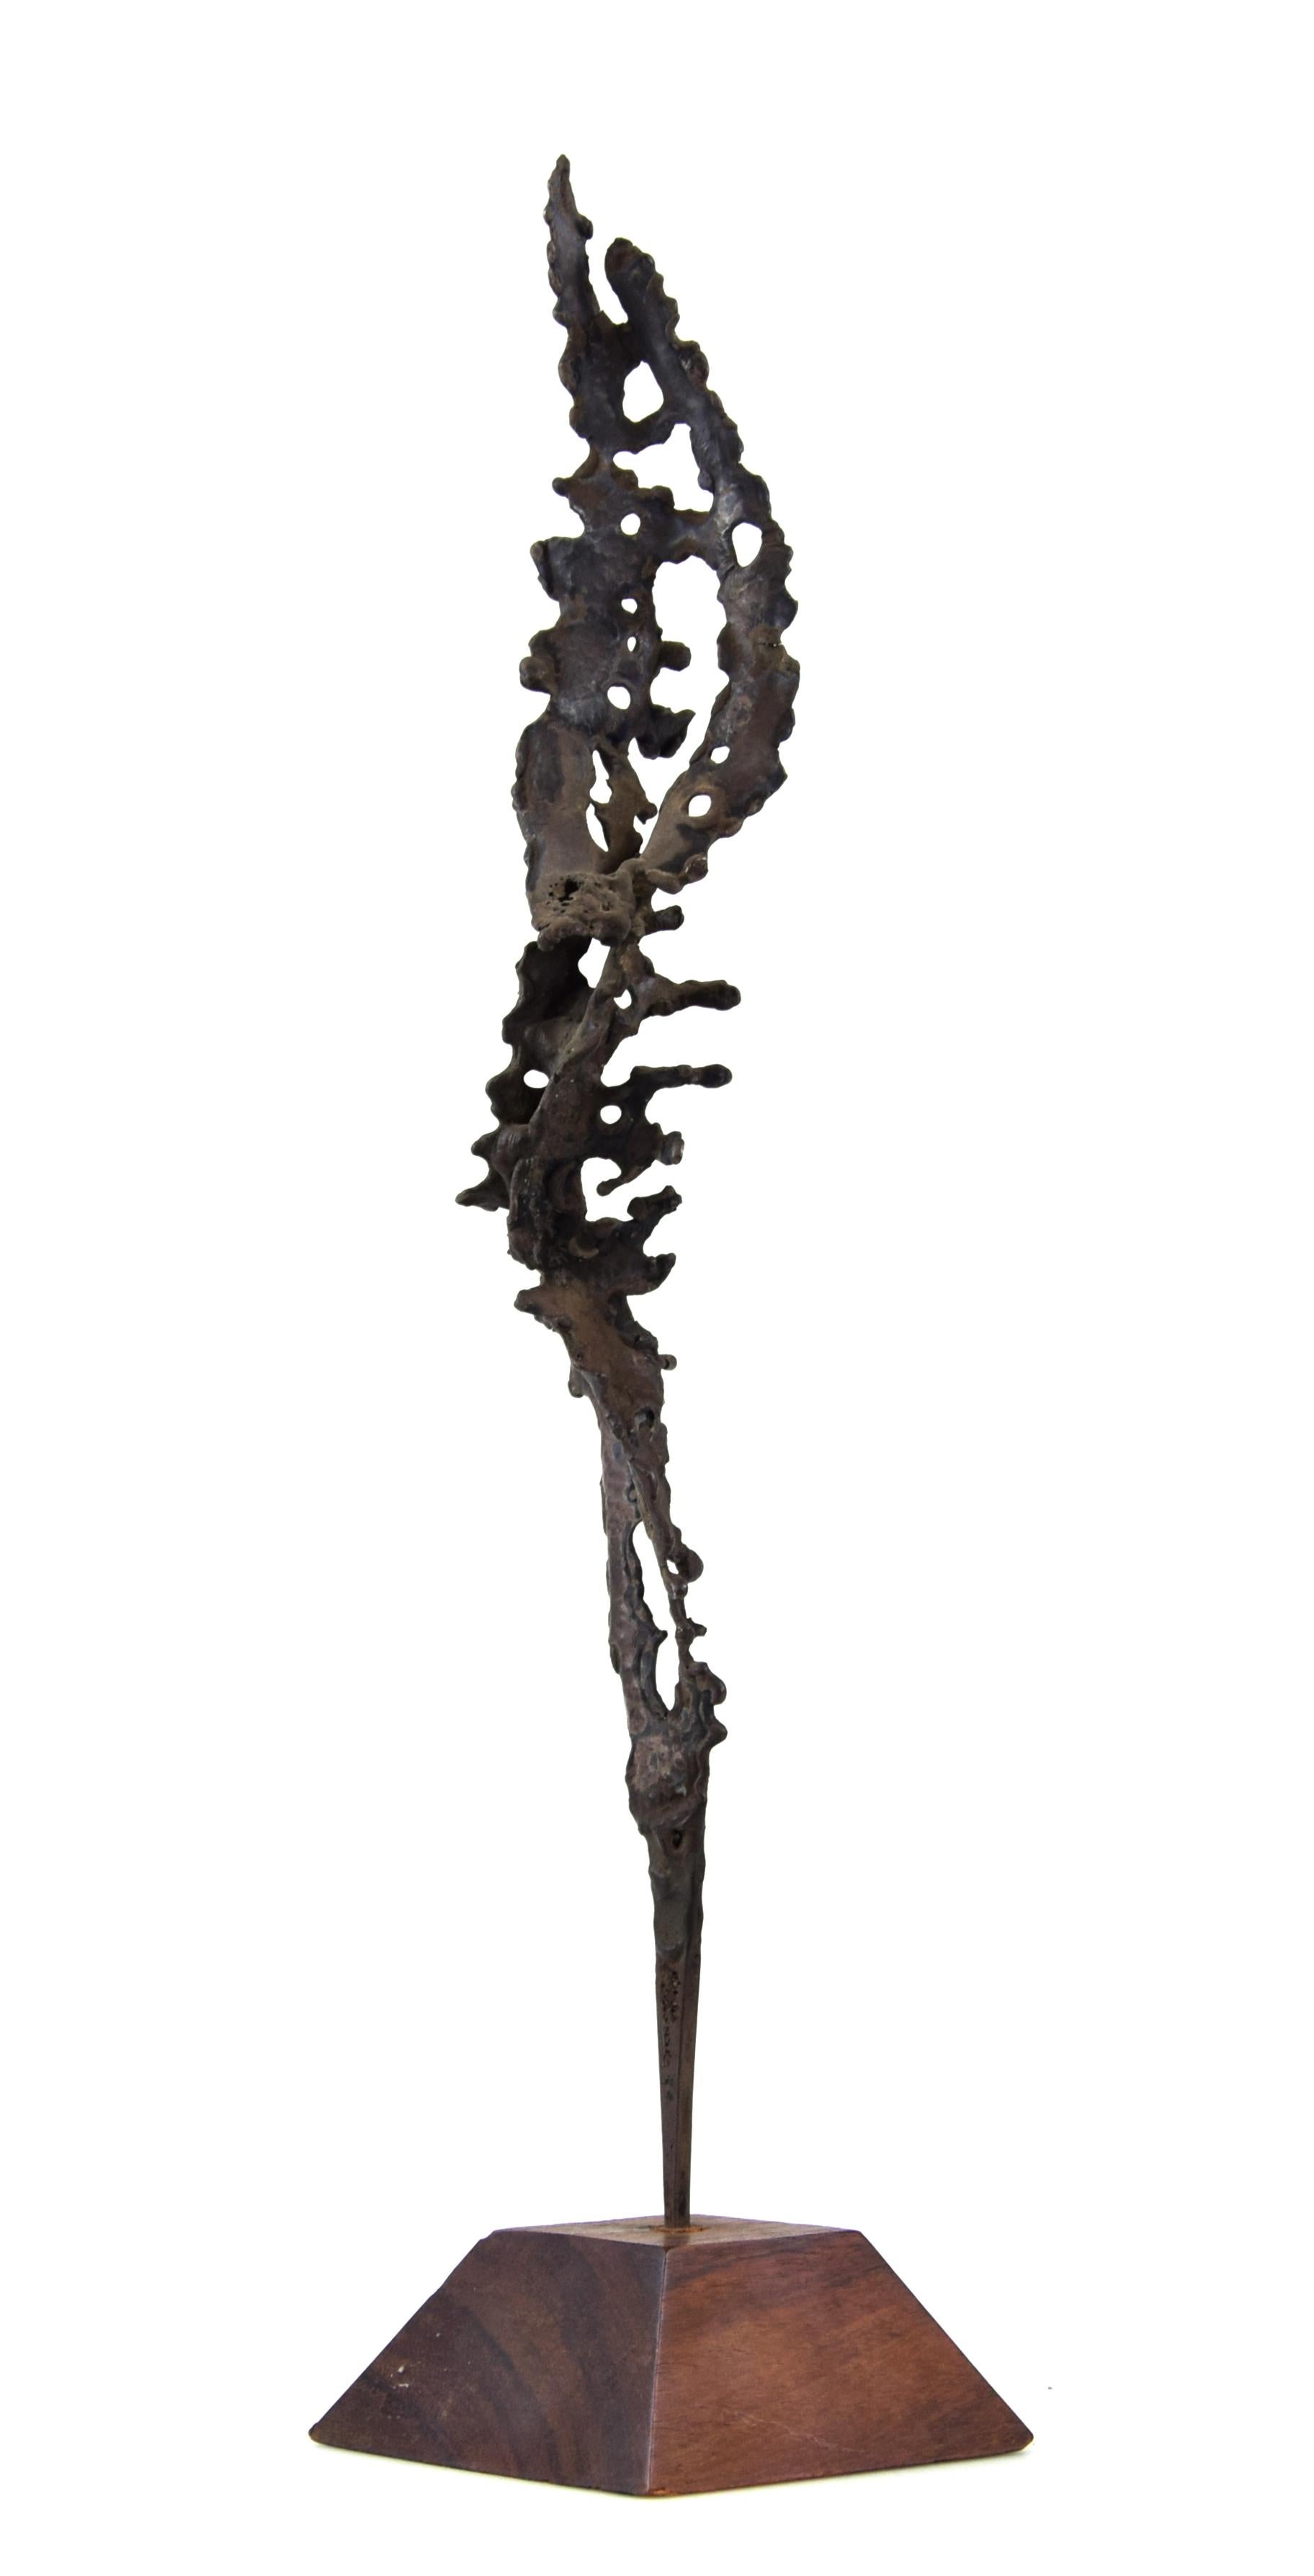 Composition en argent - Sculpture en bronze argenté de N. Franchina - 1960